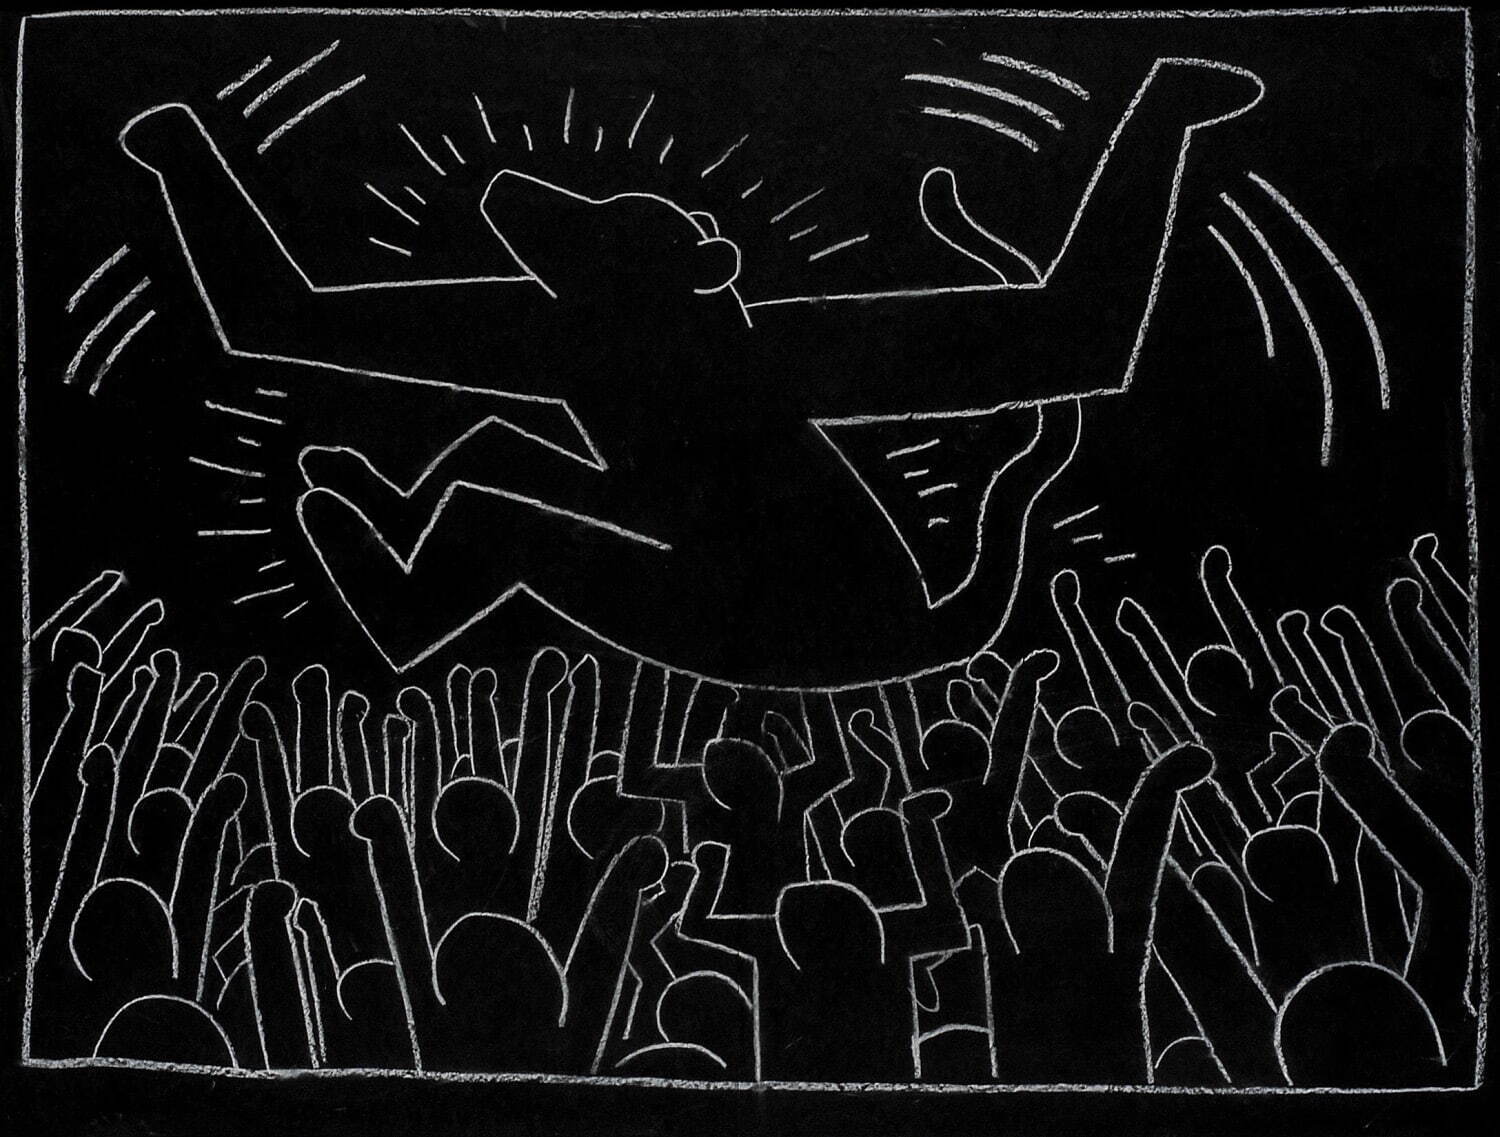 キース・ヘリング 《無題(サブウェイ・ドローイング)》 1981-83年
中村キース・ヘリング美術館蔵 Keith Haring Artwork ©Keith Haring Foundation